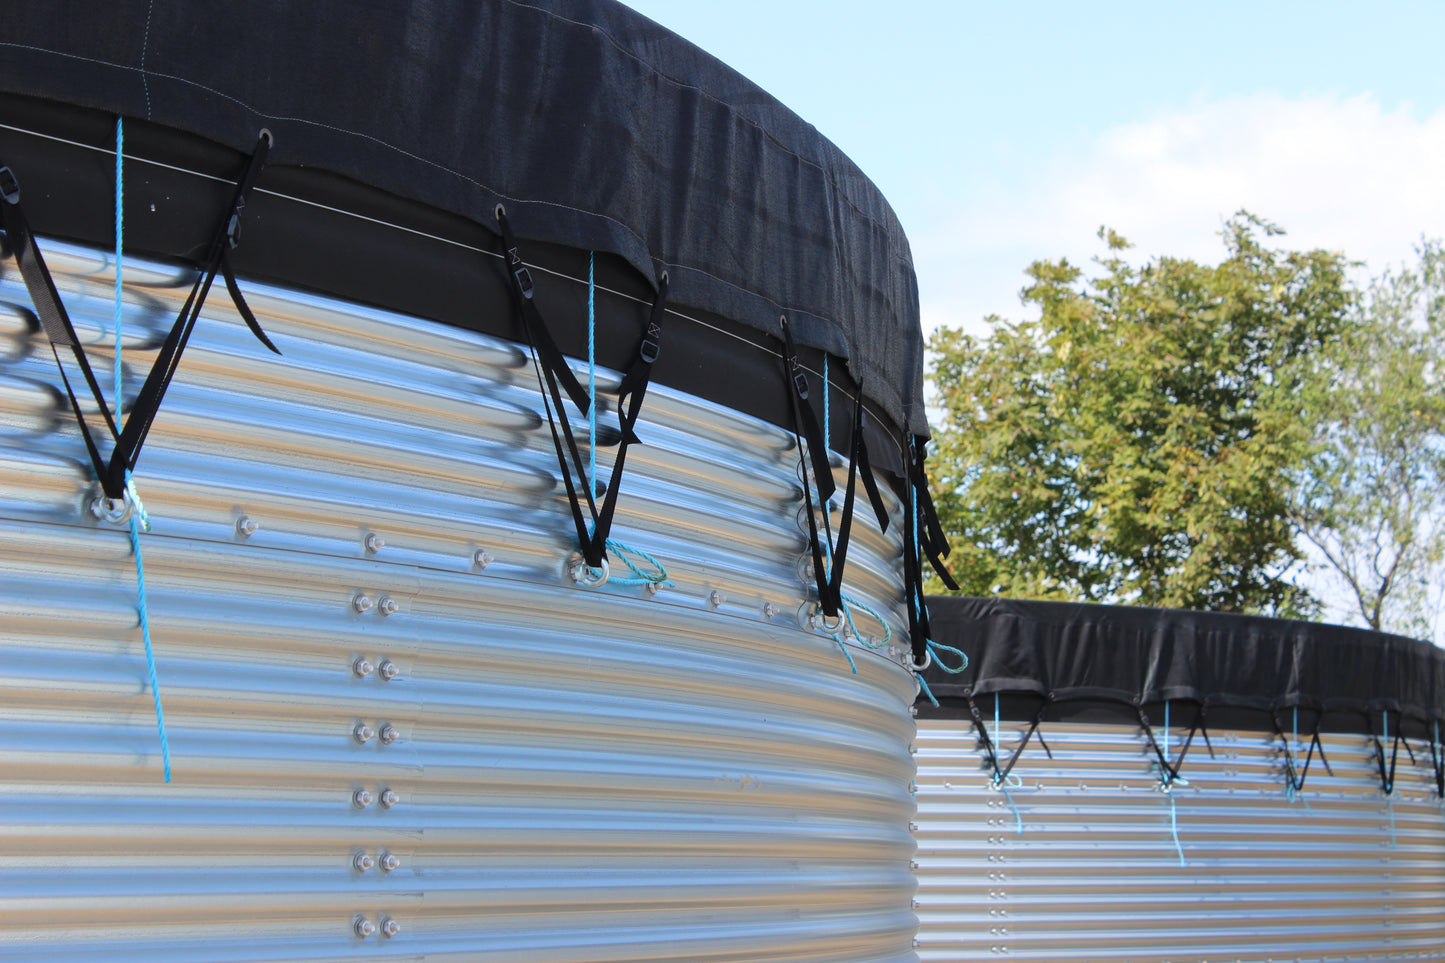 18,000 litre Galvanised Steel Water Tank